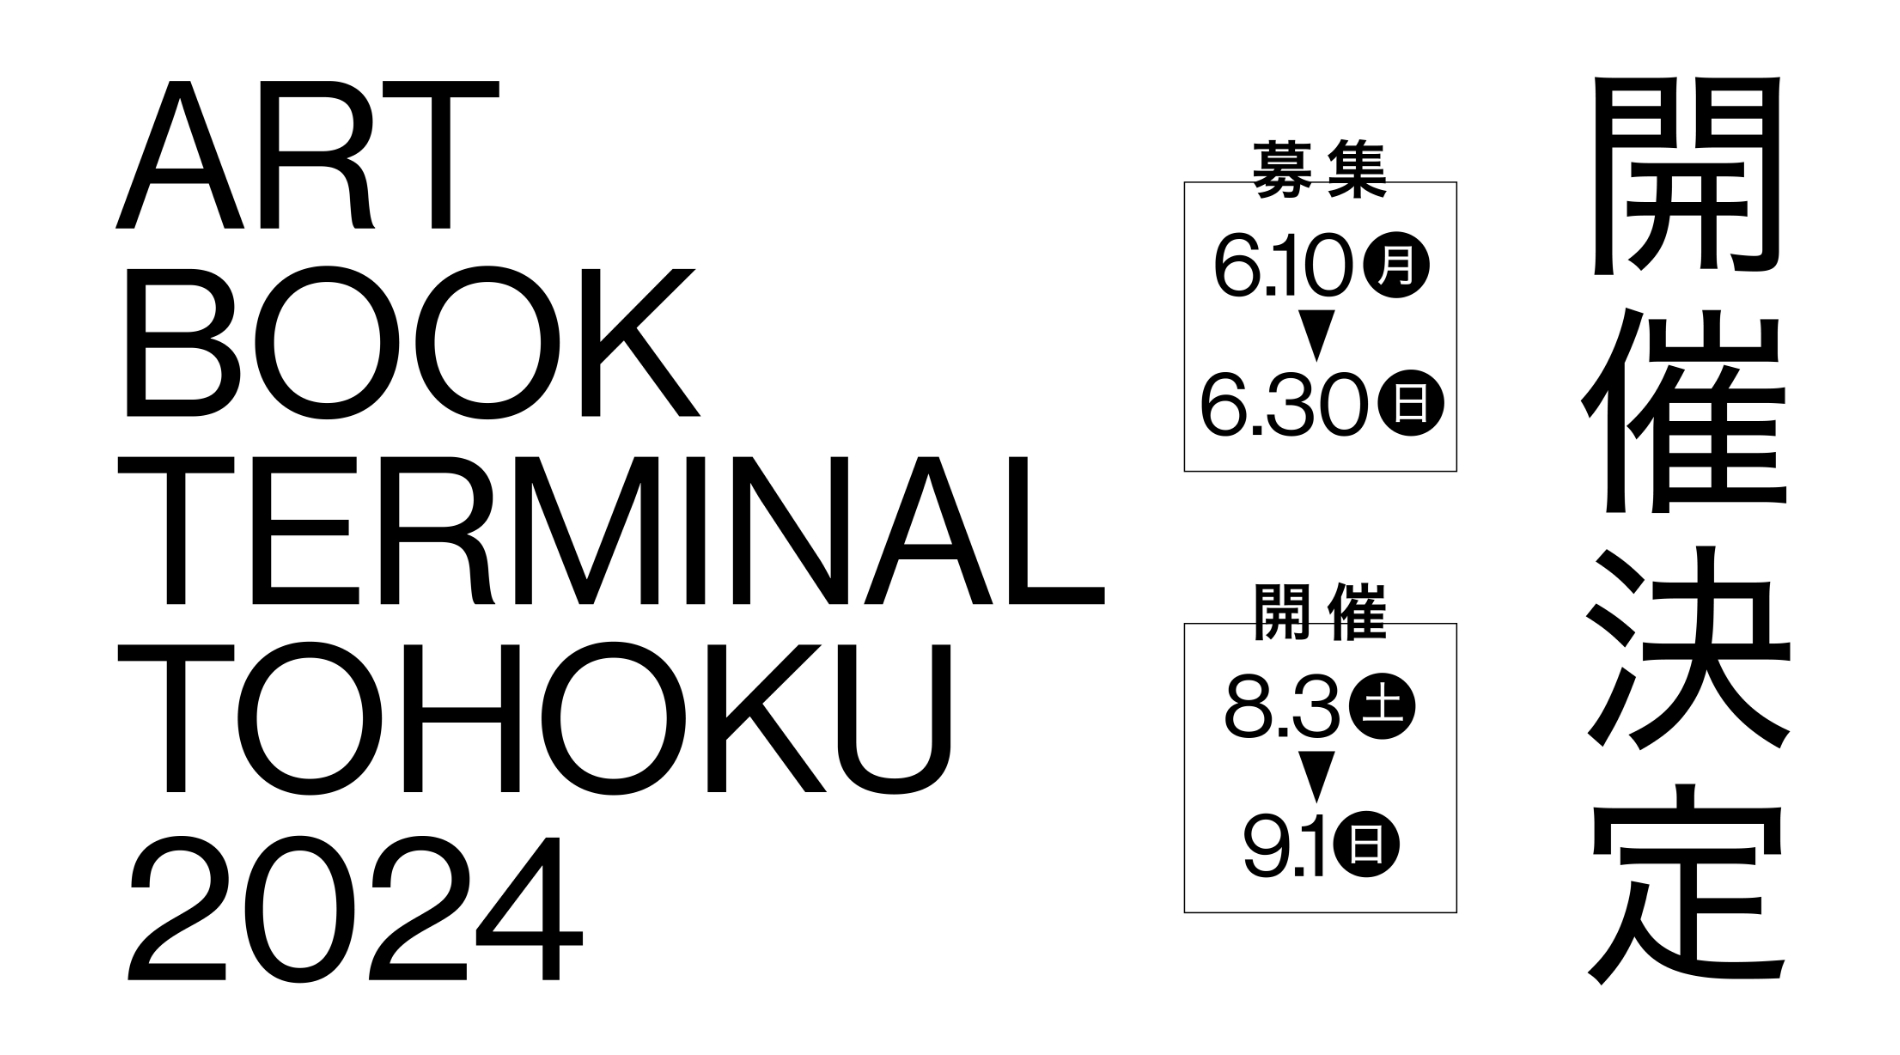 ART BOOK TERMINAL TOHOKU